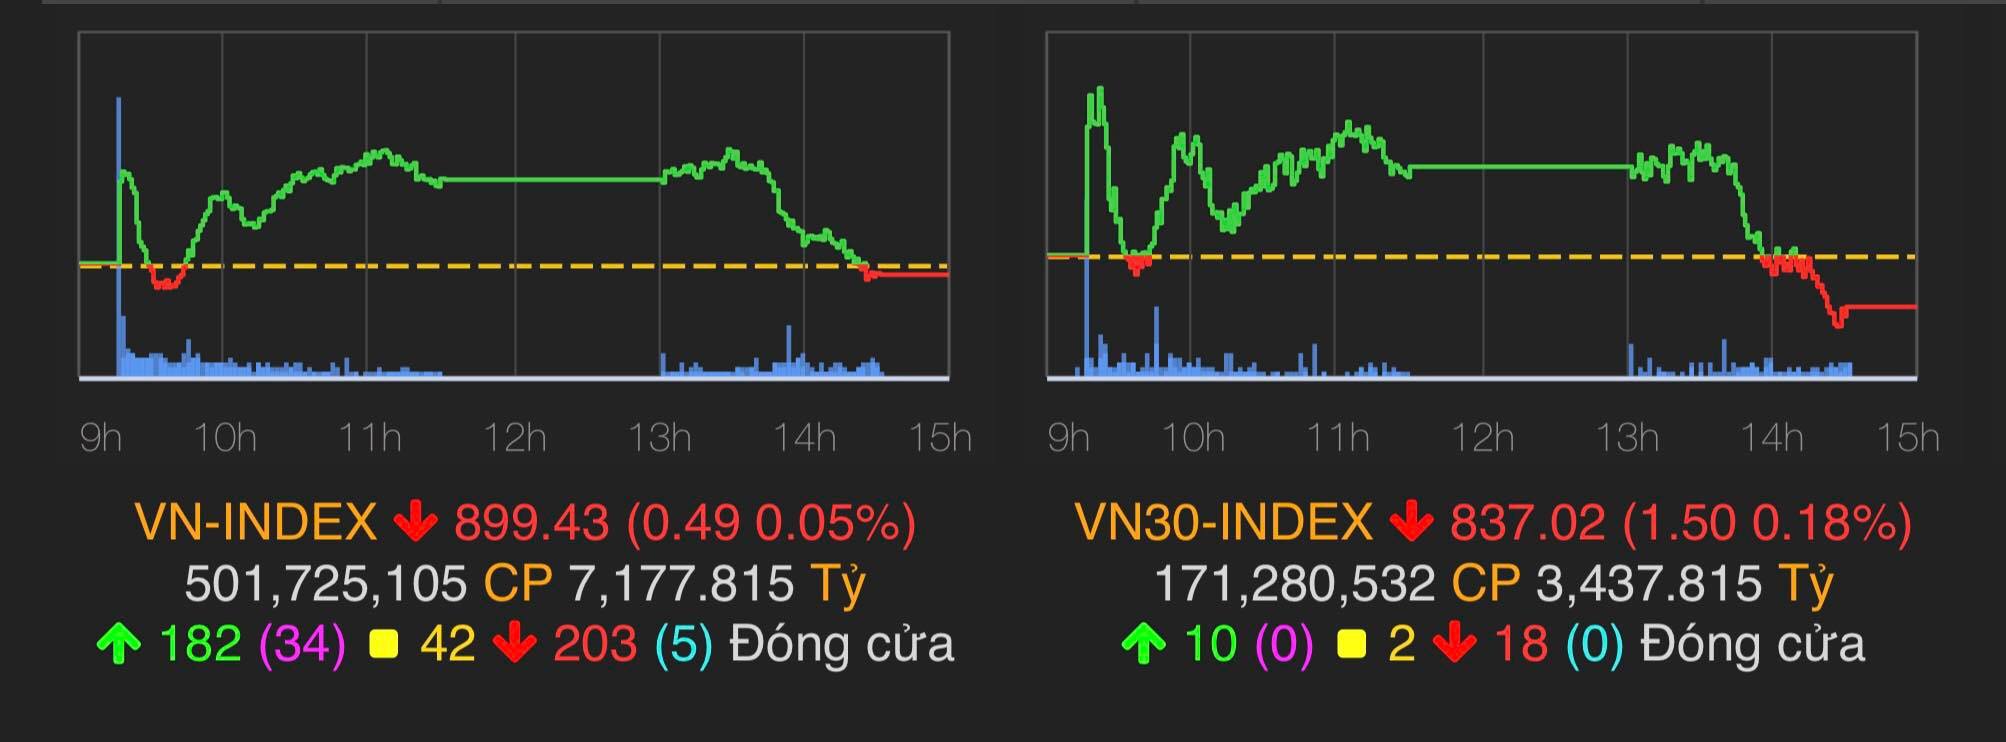 VN-Index giảm 0,49 điểm (tương đương 0,05%) xuống mốc 899,43 điểm.